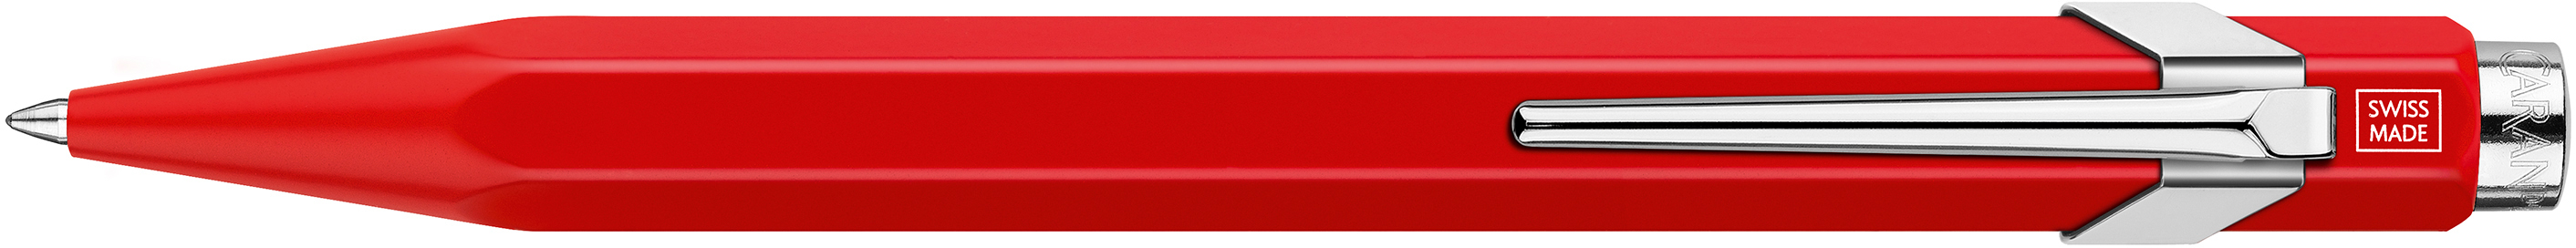 CARAN D'ACHE Roller 849 0.7mm 846.070 rouge rouge